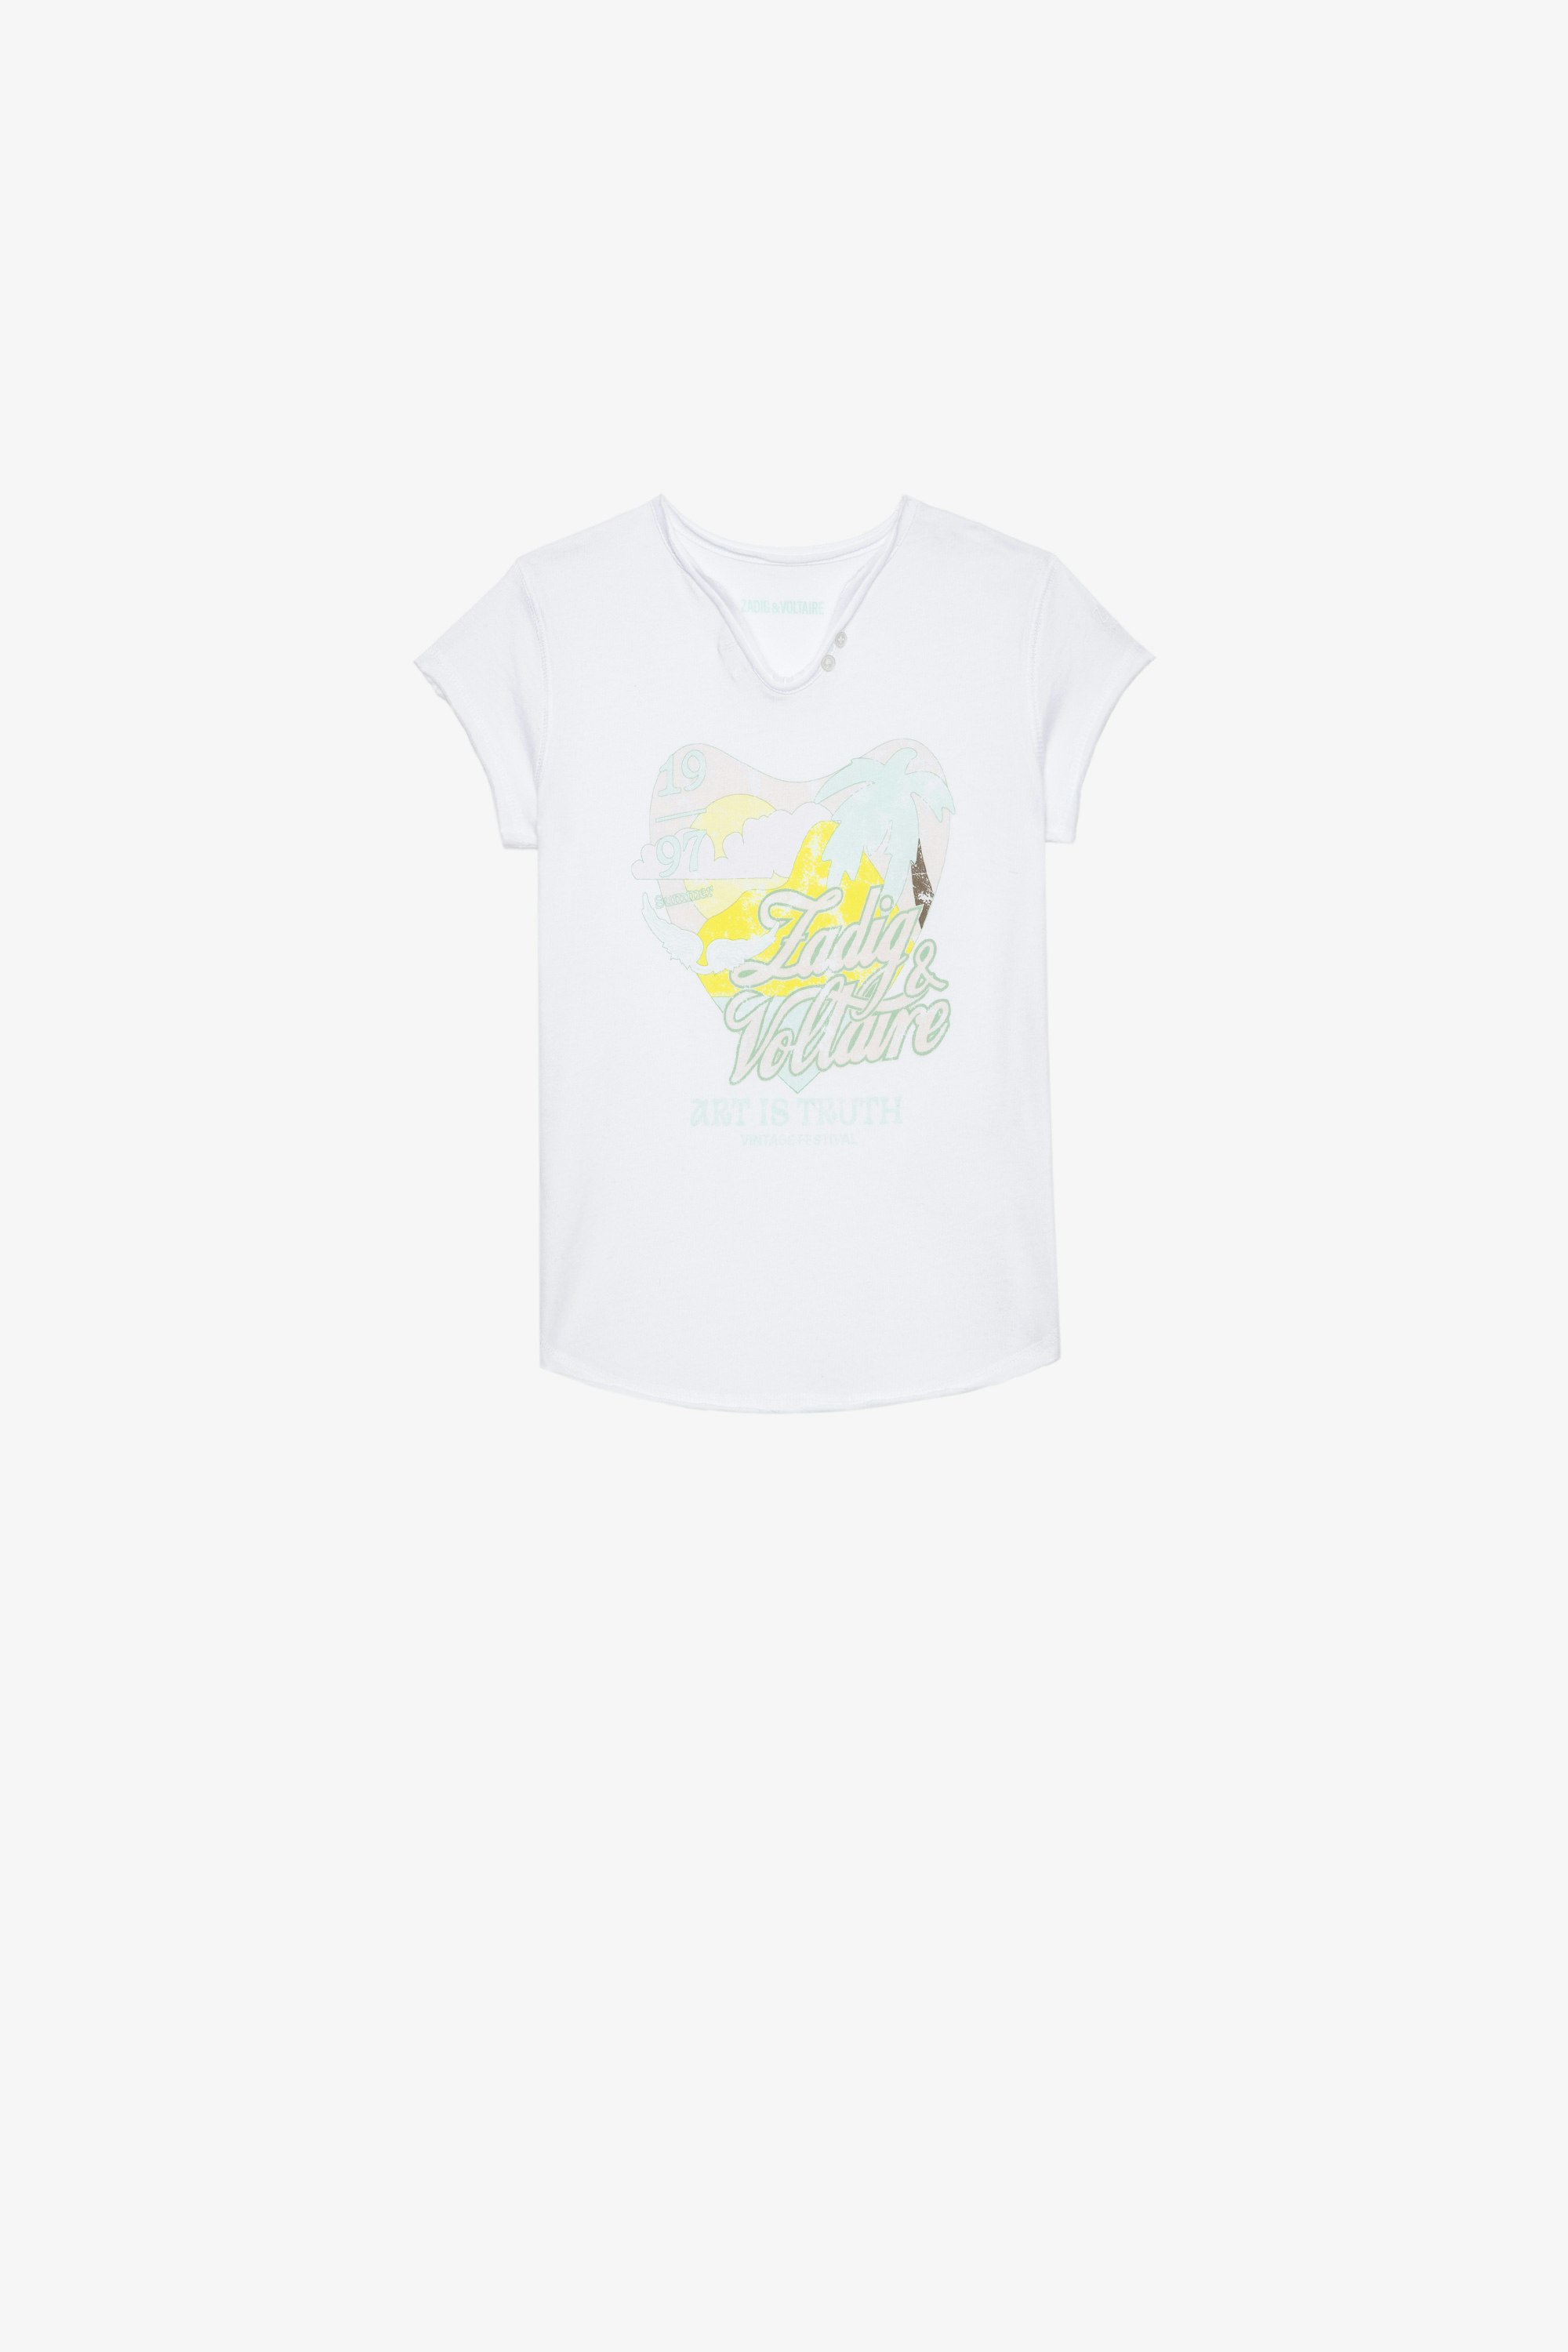 Kinder-T-Shirt Boxo Kinder-T-Shirt aus weißer Baumwolle mit einem kristallverzierten Print in Metallic-Optik und Stickereien